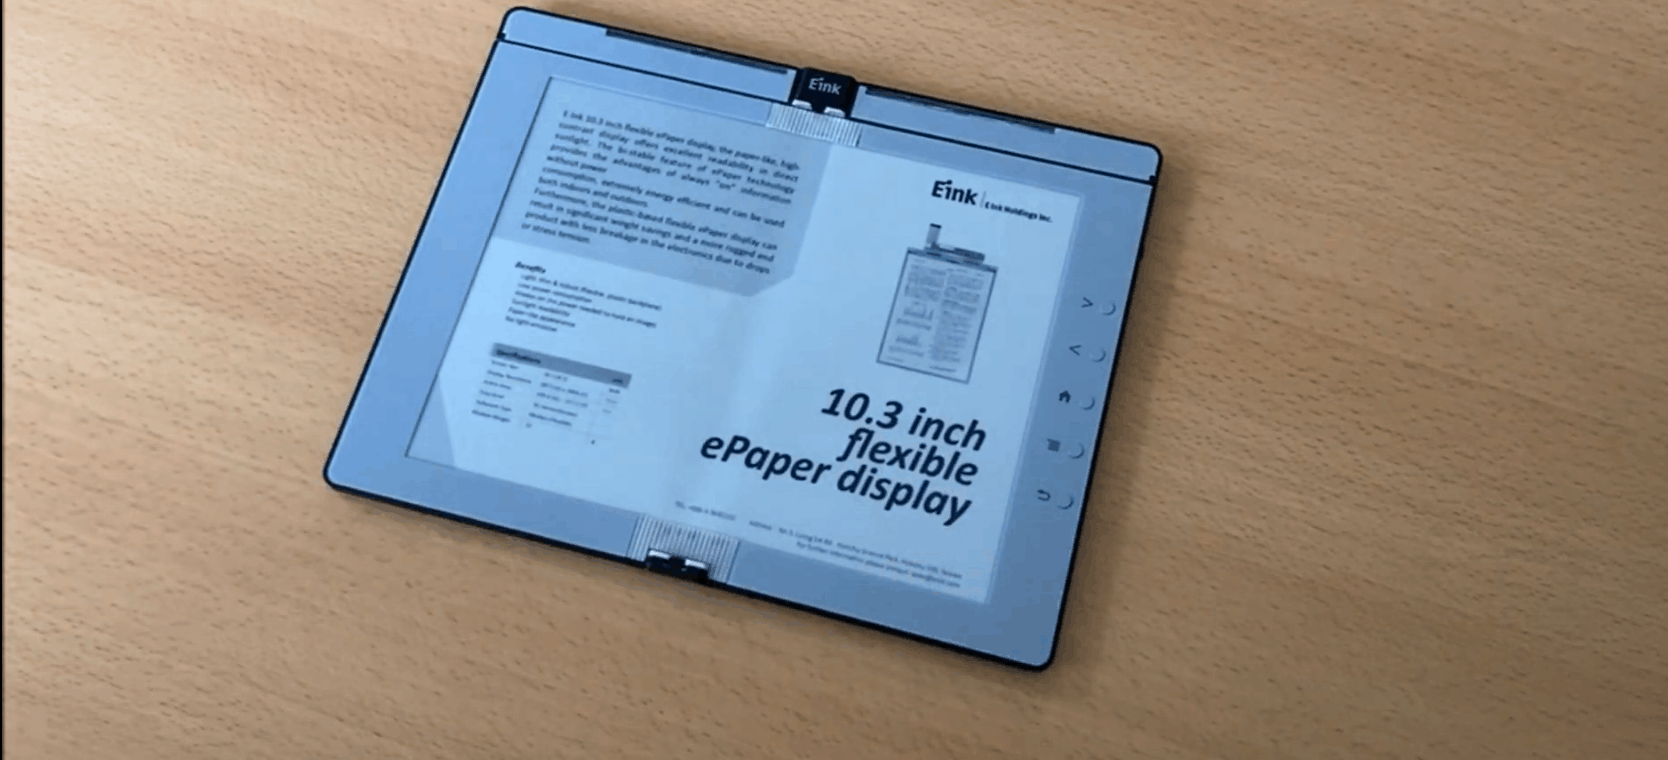 Складная электронная книга E Ink Prototype показана на видео